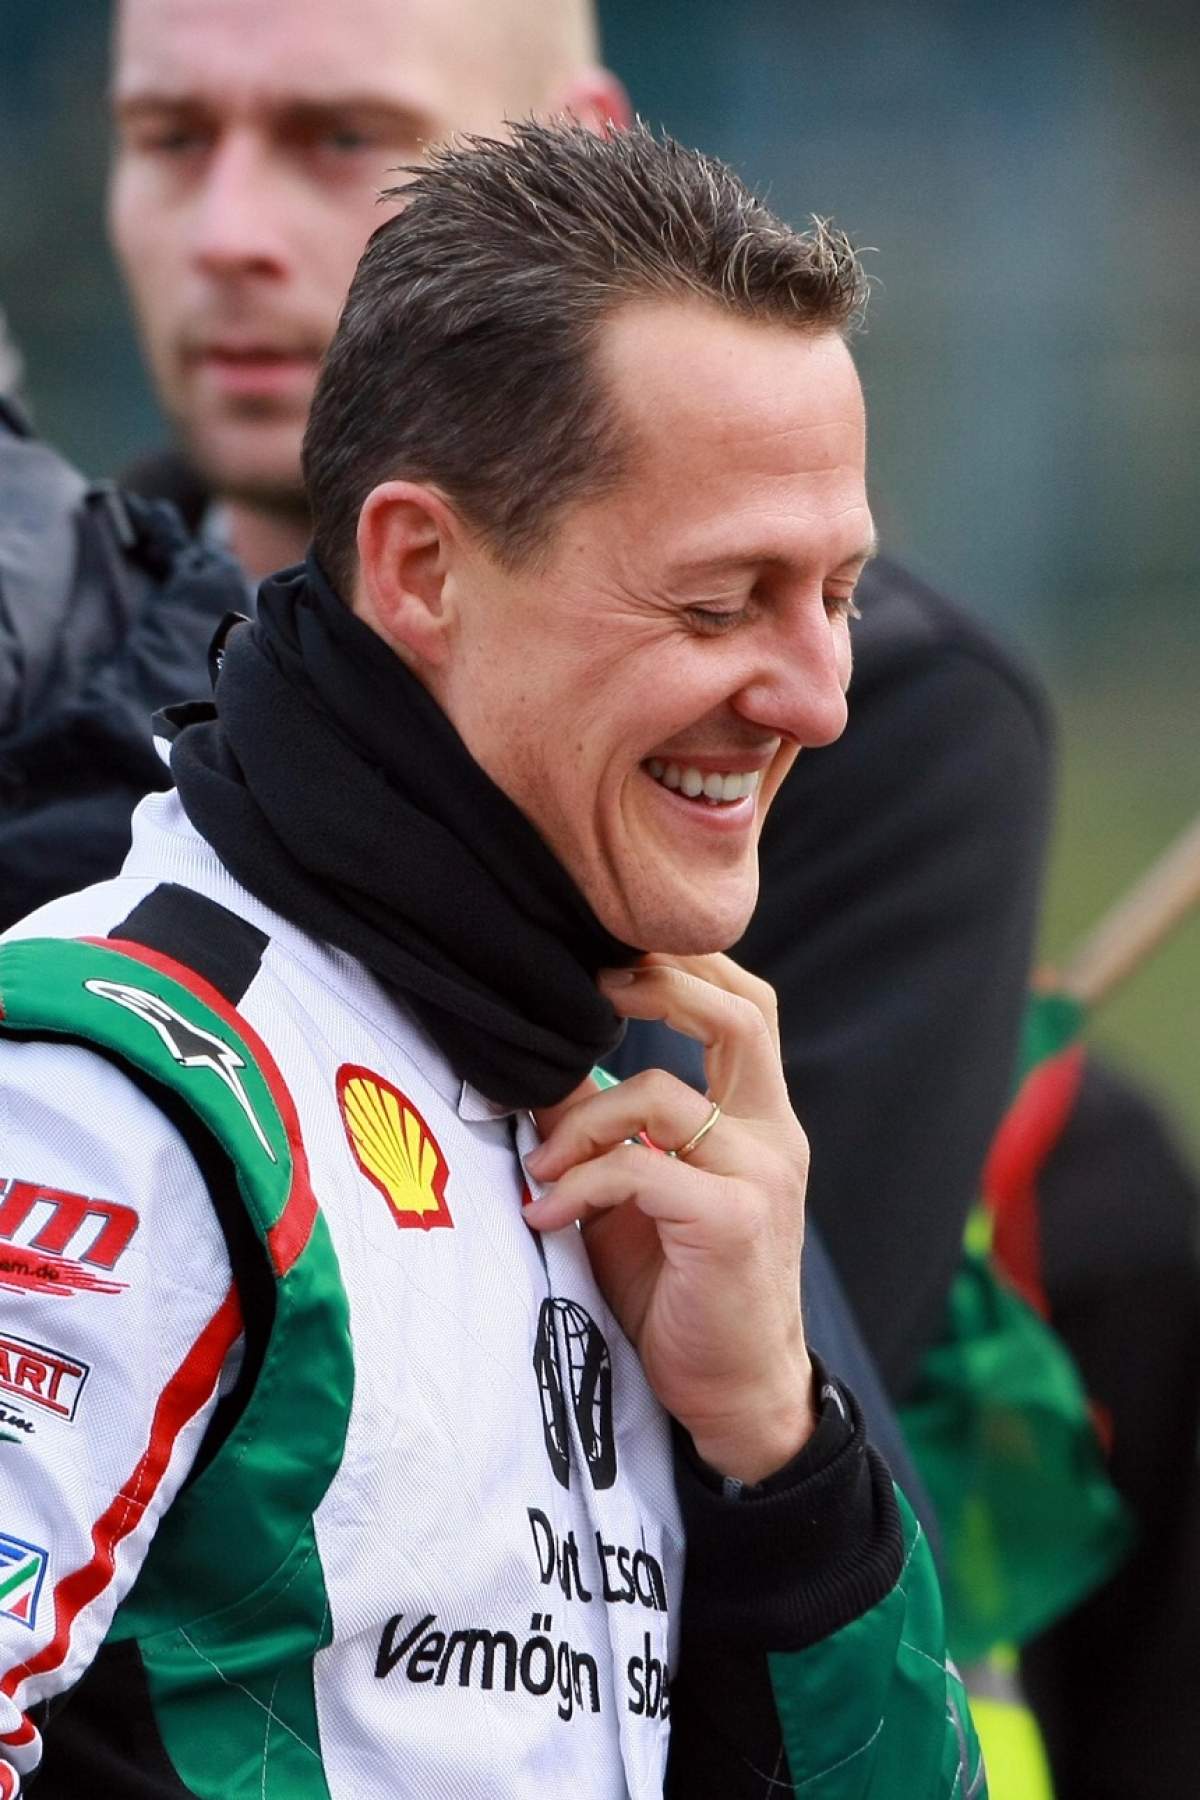 Ştire de ULTIMĂ ORĂ despre Michael Schumacher! Dă semne că îşi revine?